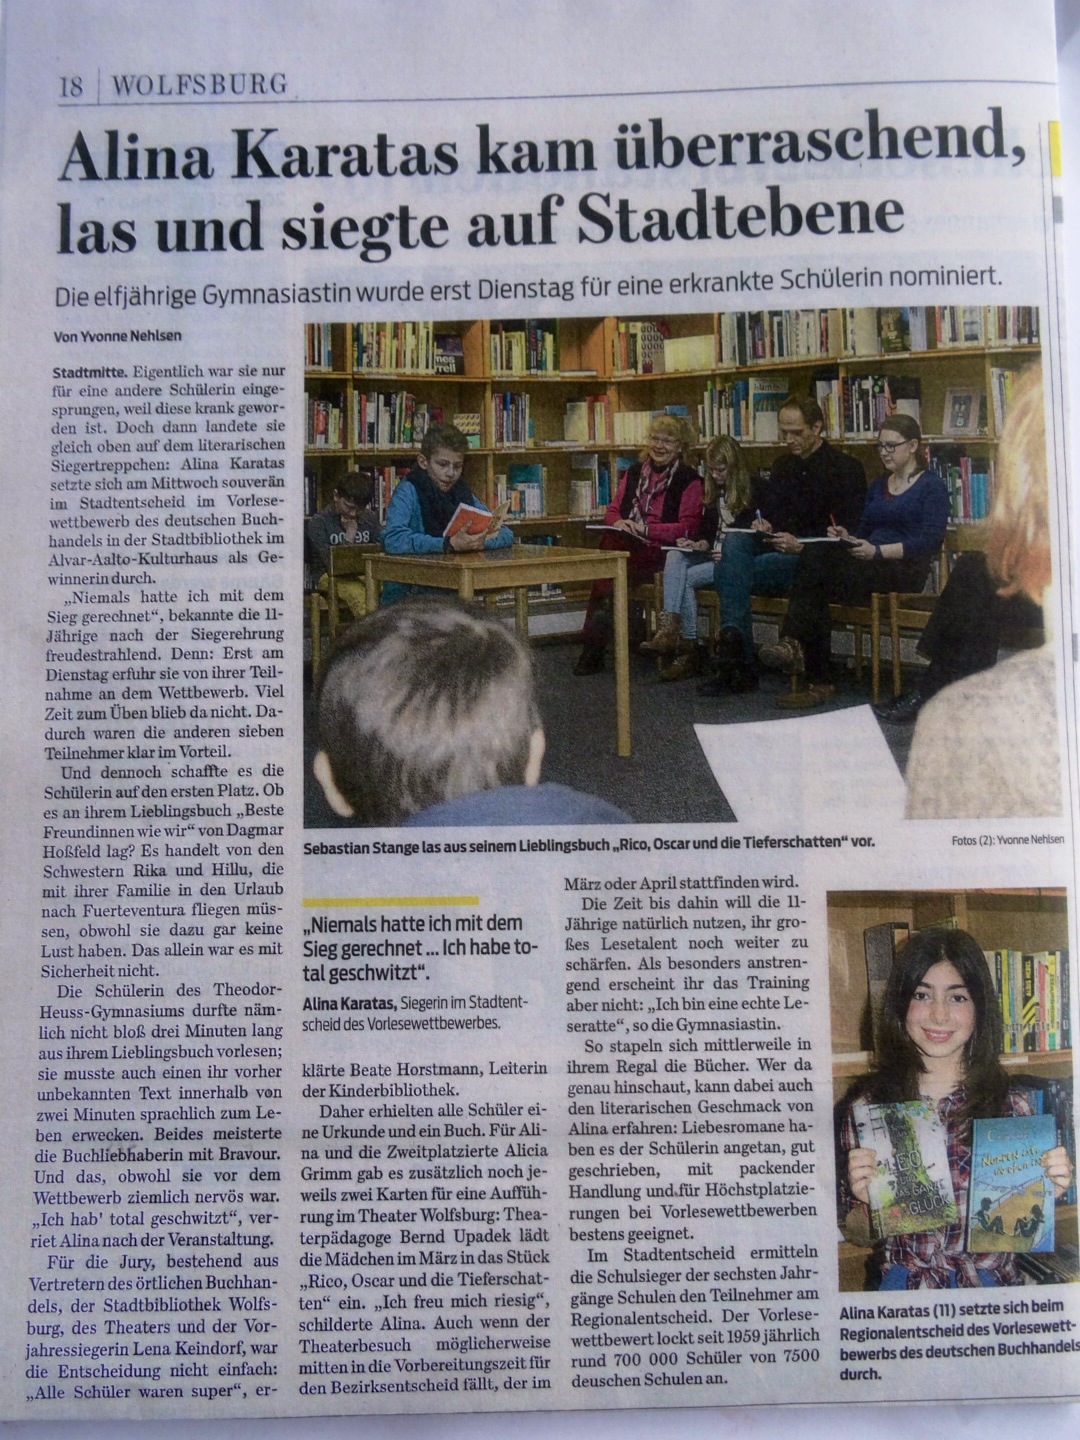 Vorlesewettbewerb in der Stadtbibliothek - WN, 13.02.2014